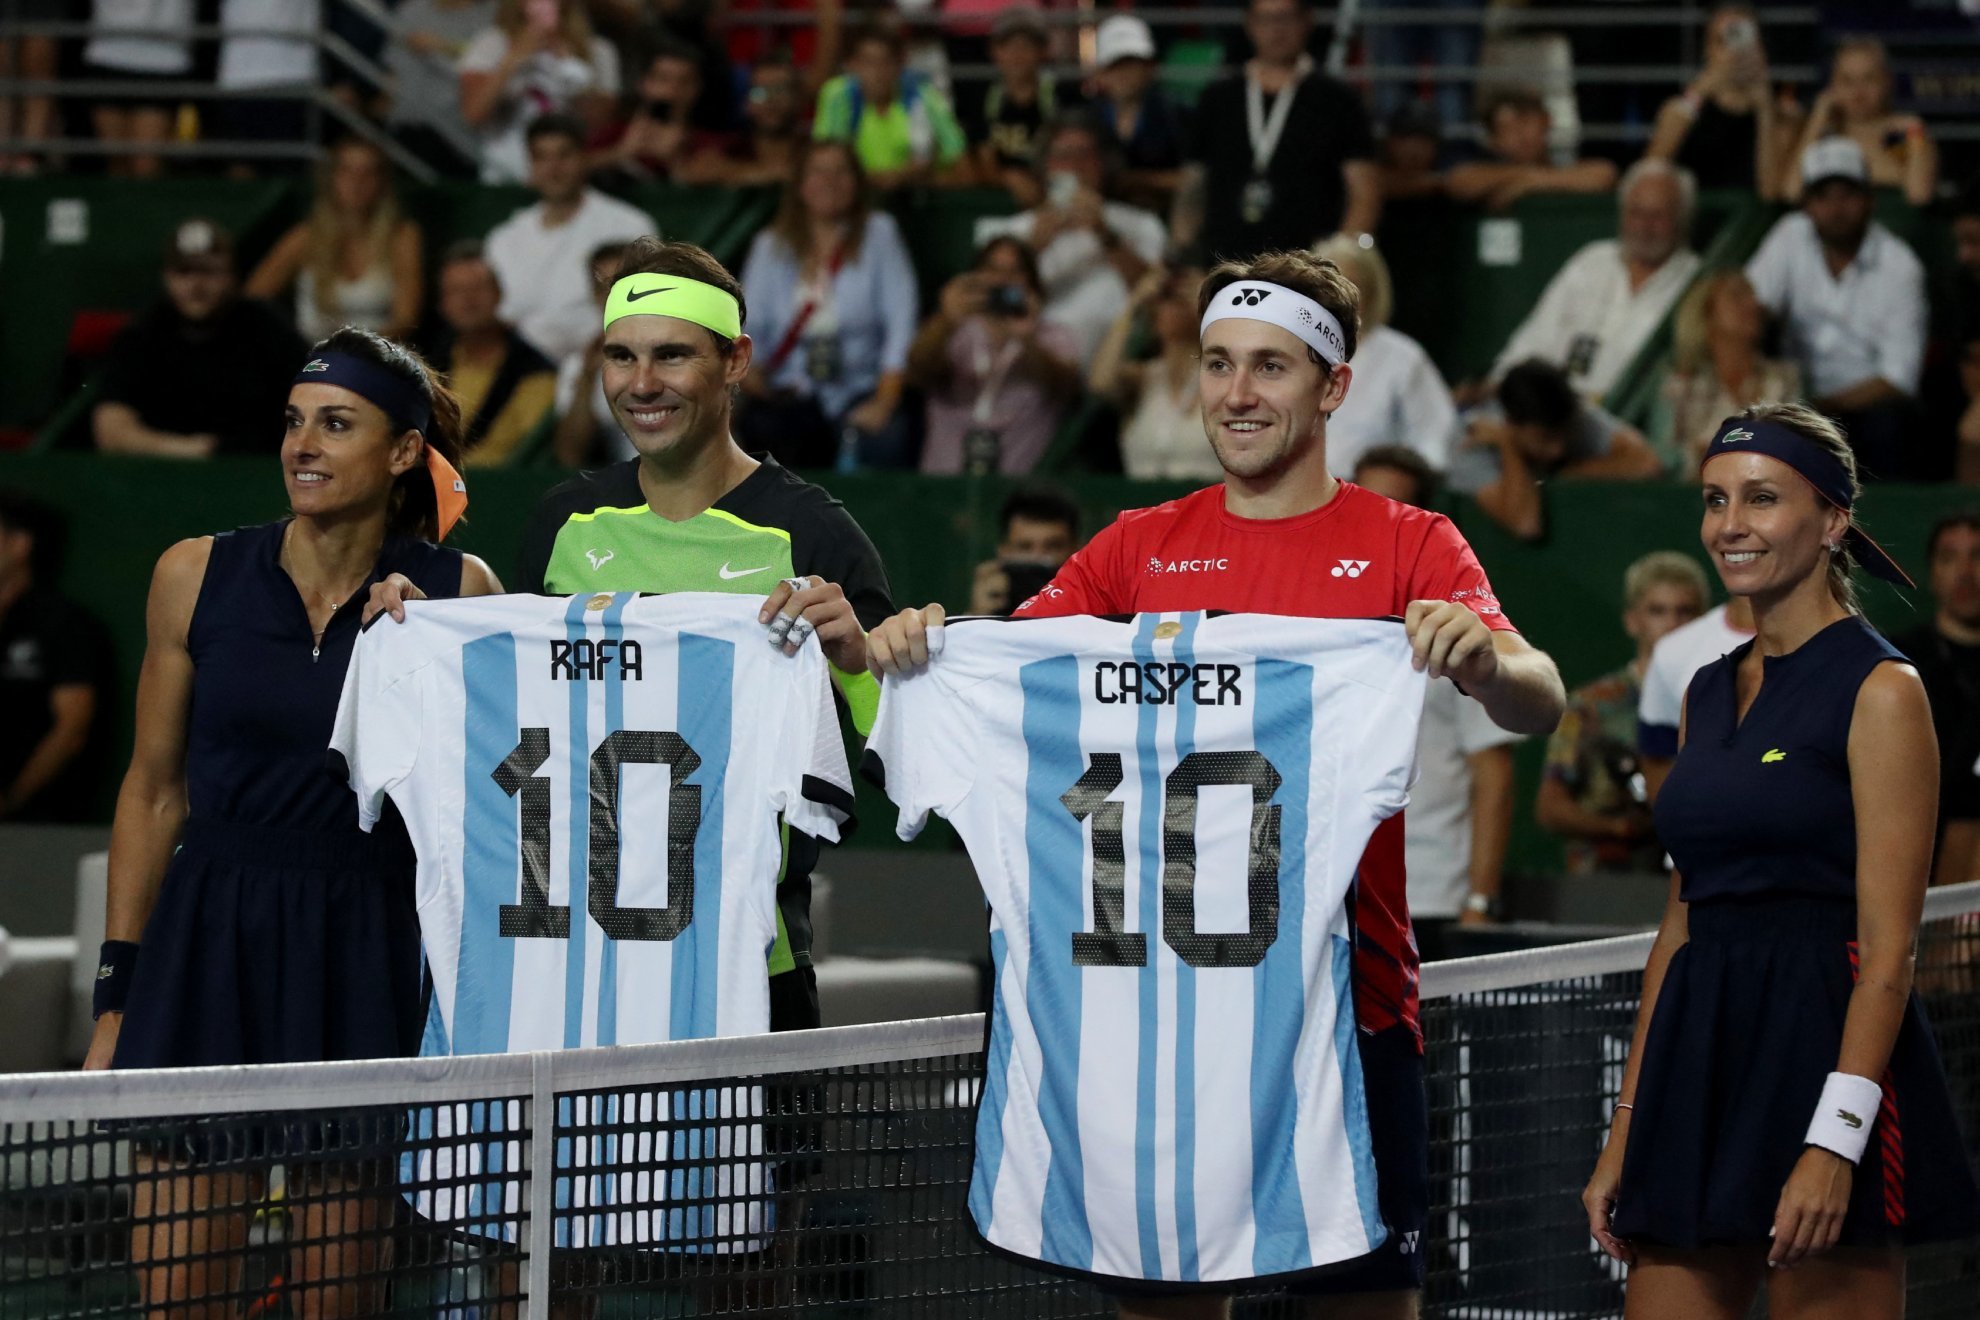 Noche espectacular en Argentina con Rafa Nadal y sus amigos | Reuters